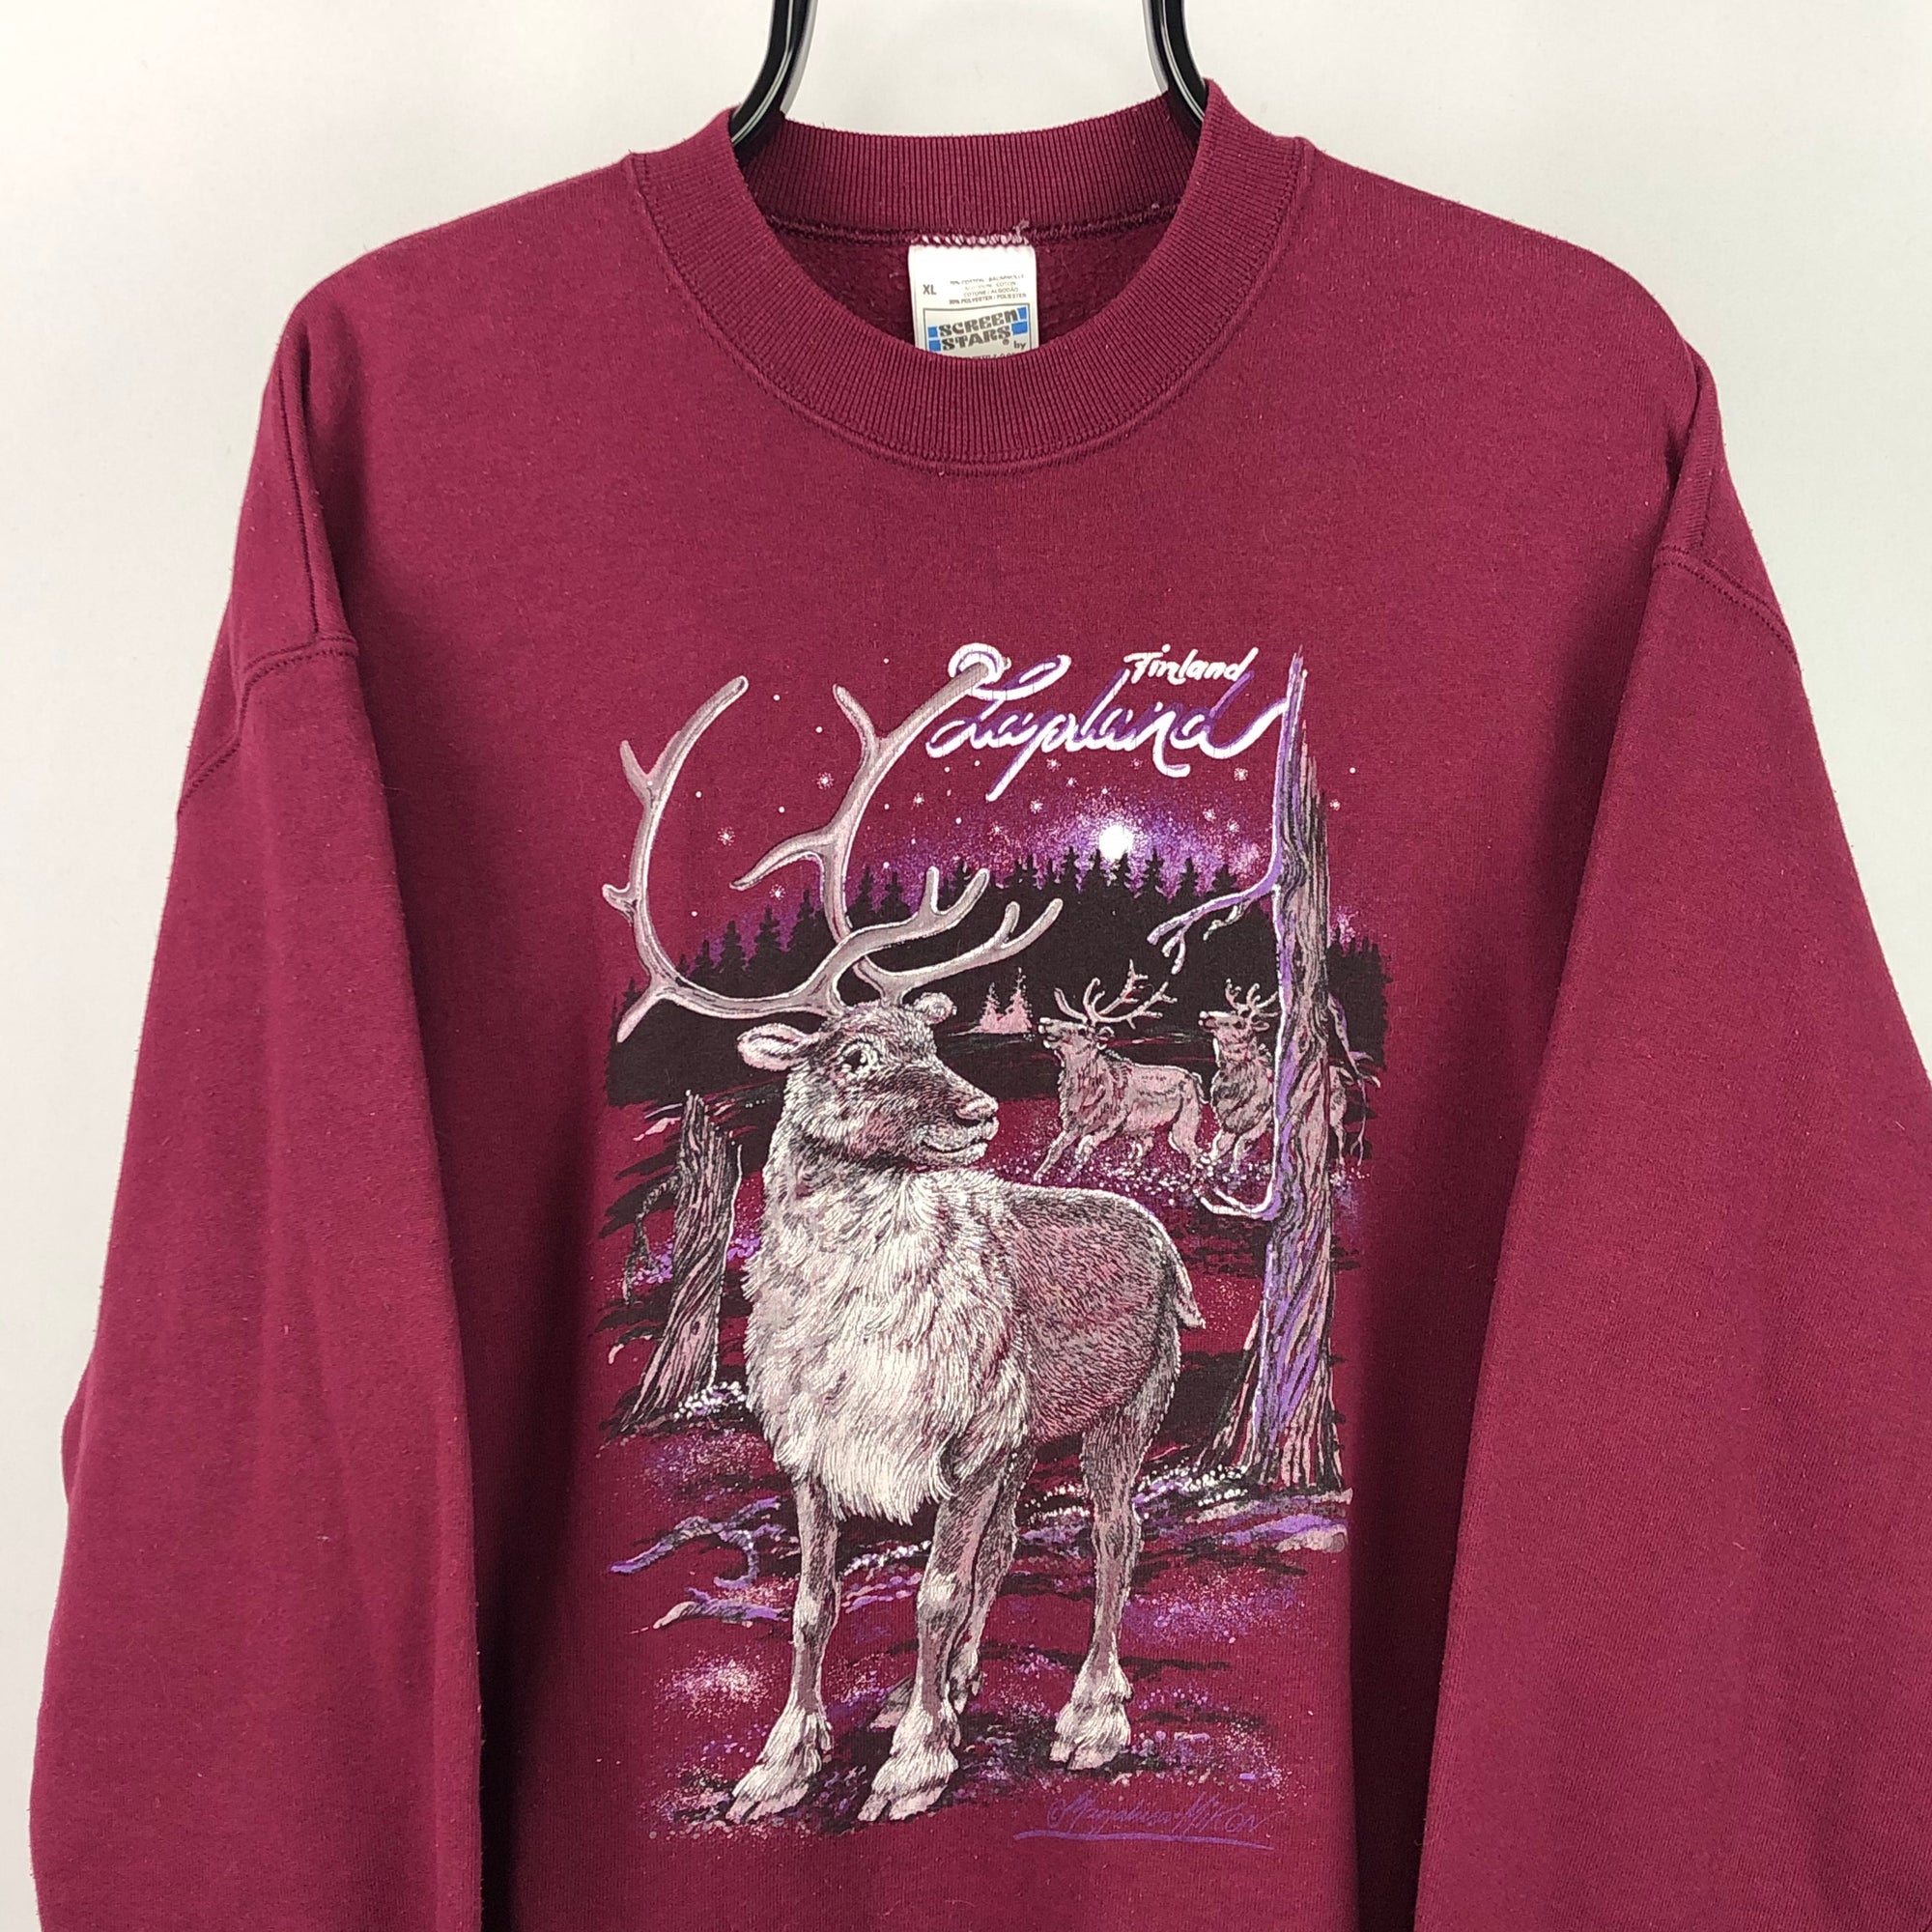 Vintage 90s Lapland Reindeer Sweatshirt - Men's Large/Women's XL